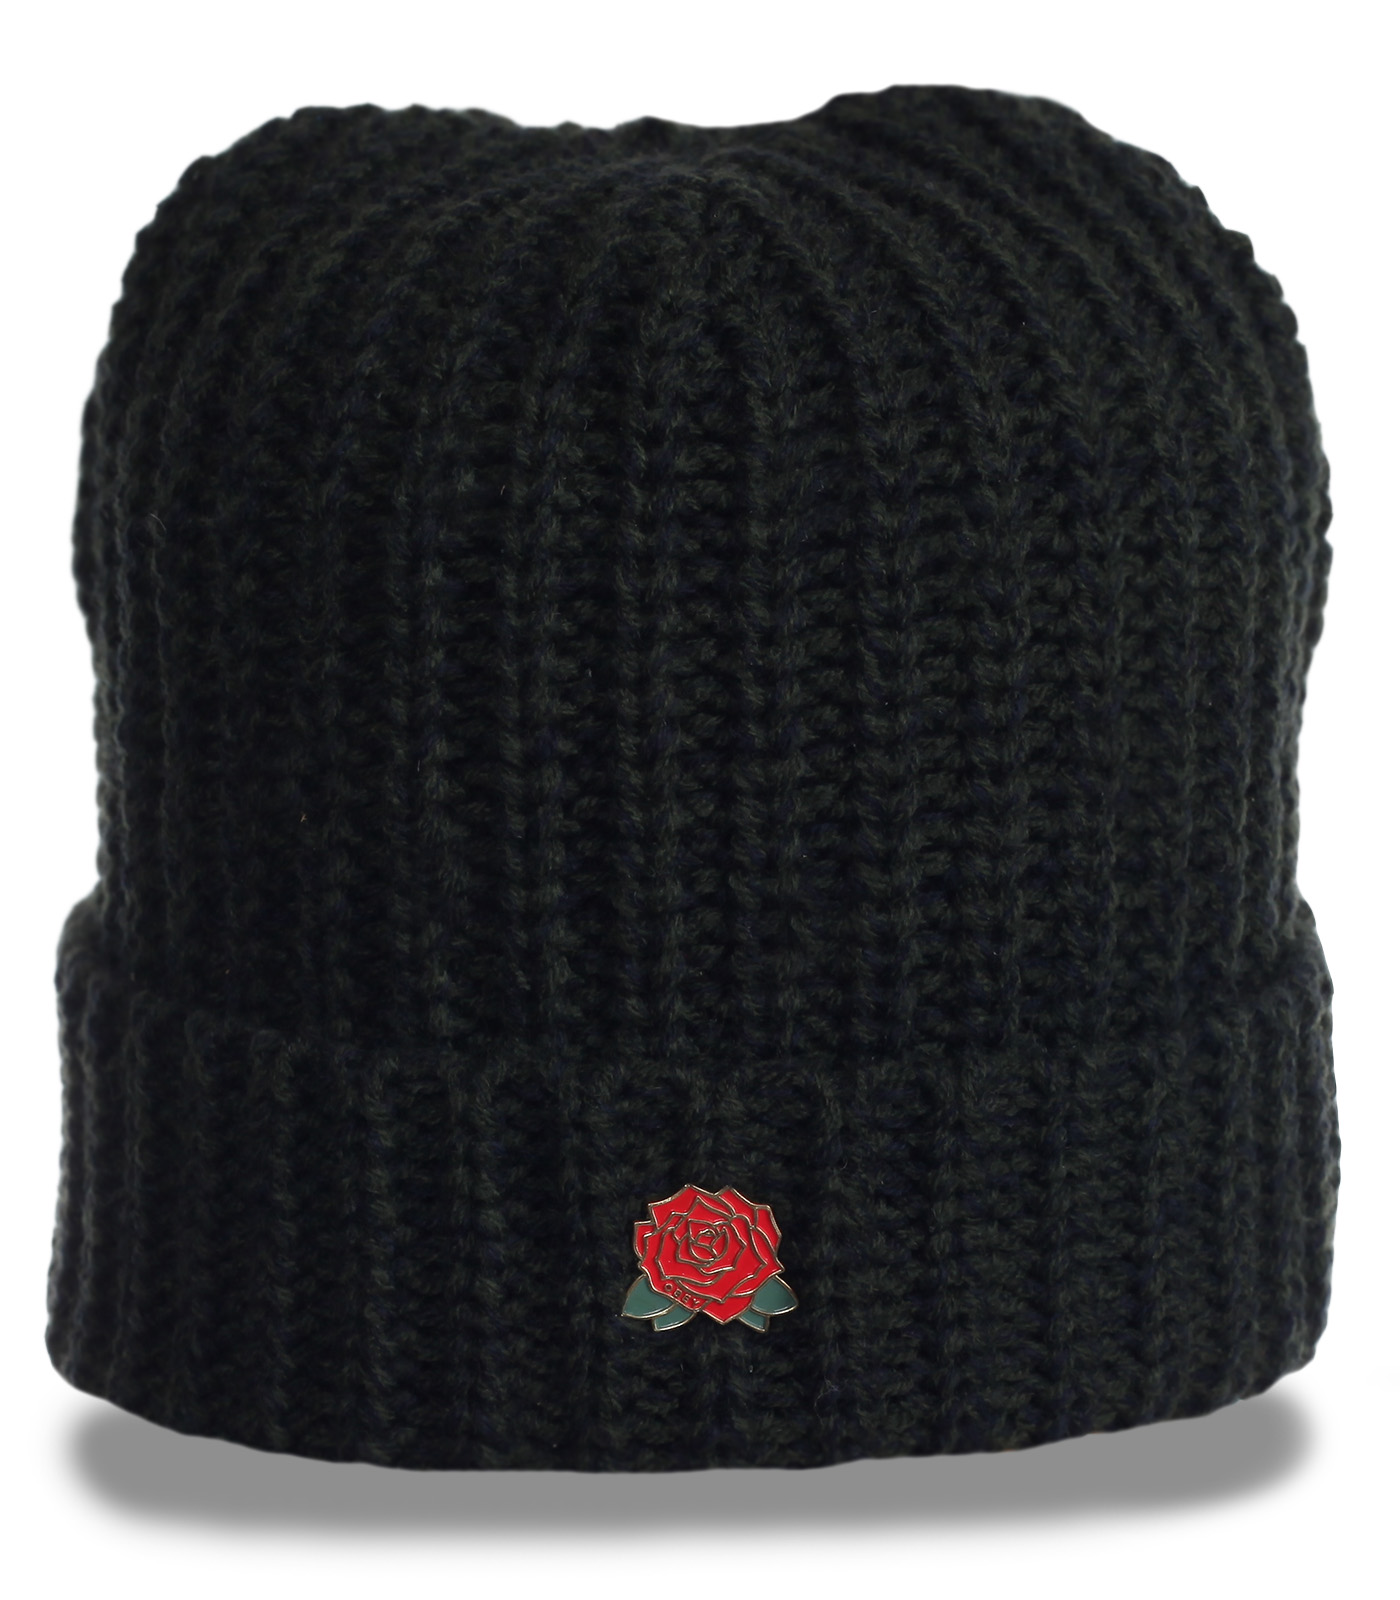 Заказать гламурную черную шапку связанную крупными нитями эксклюзивного авангардного дизайна по лучшей цене